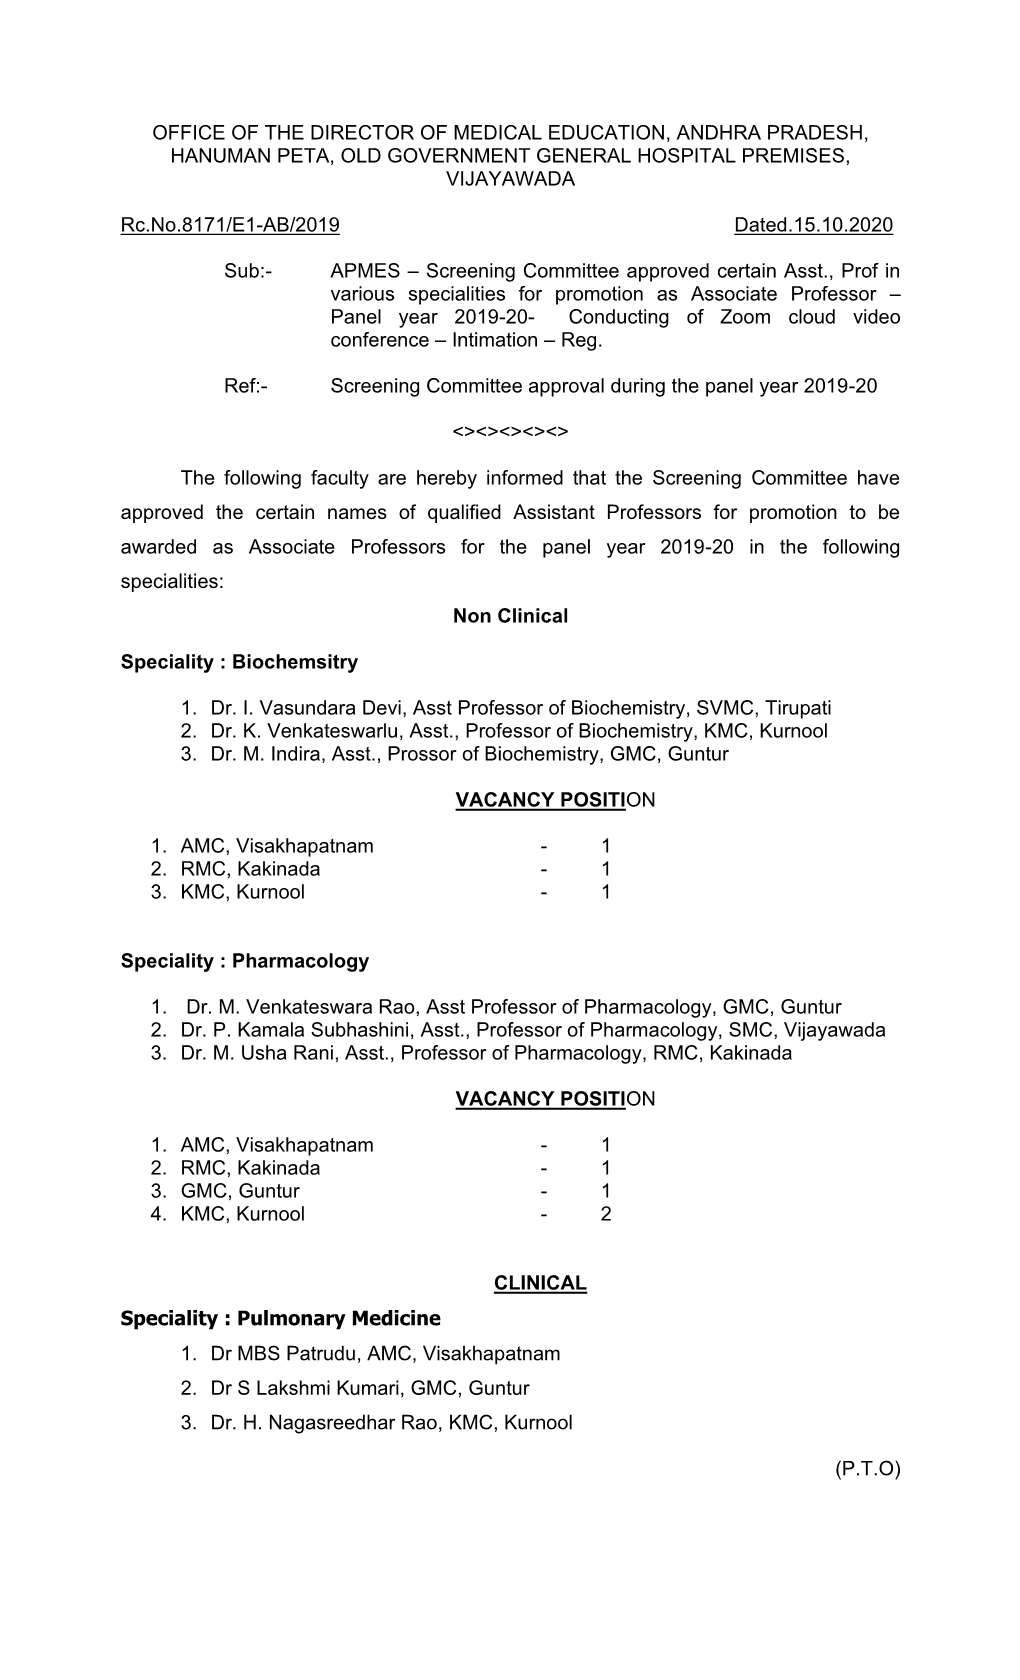 Office of the Director of Medical Education, Andhra Pradesh, Hanuman Peta, Old Government General Hospital Premises, Vijayawada